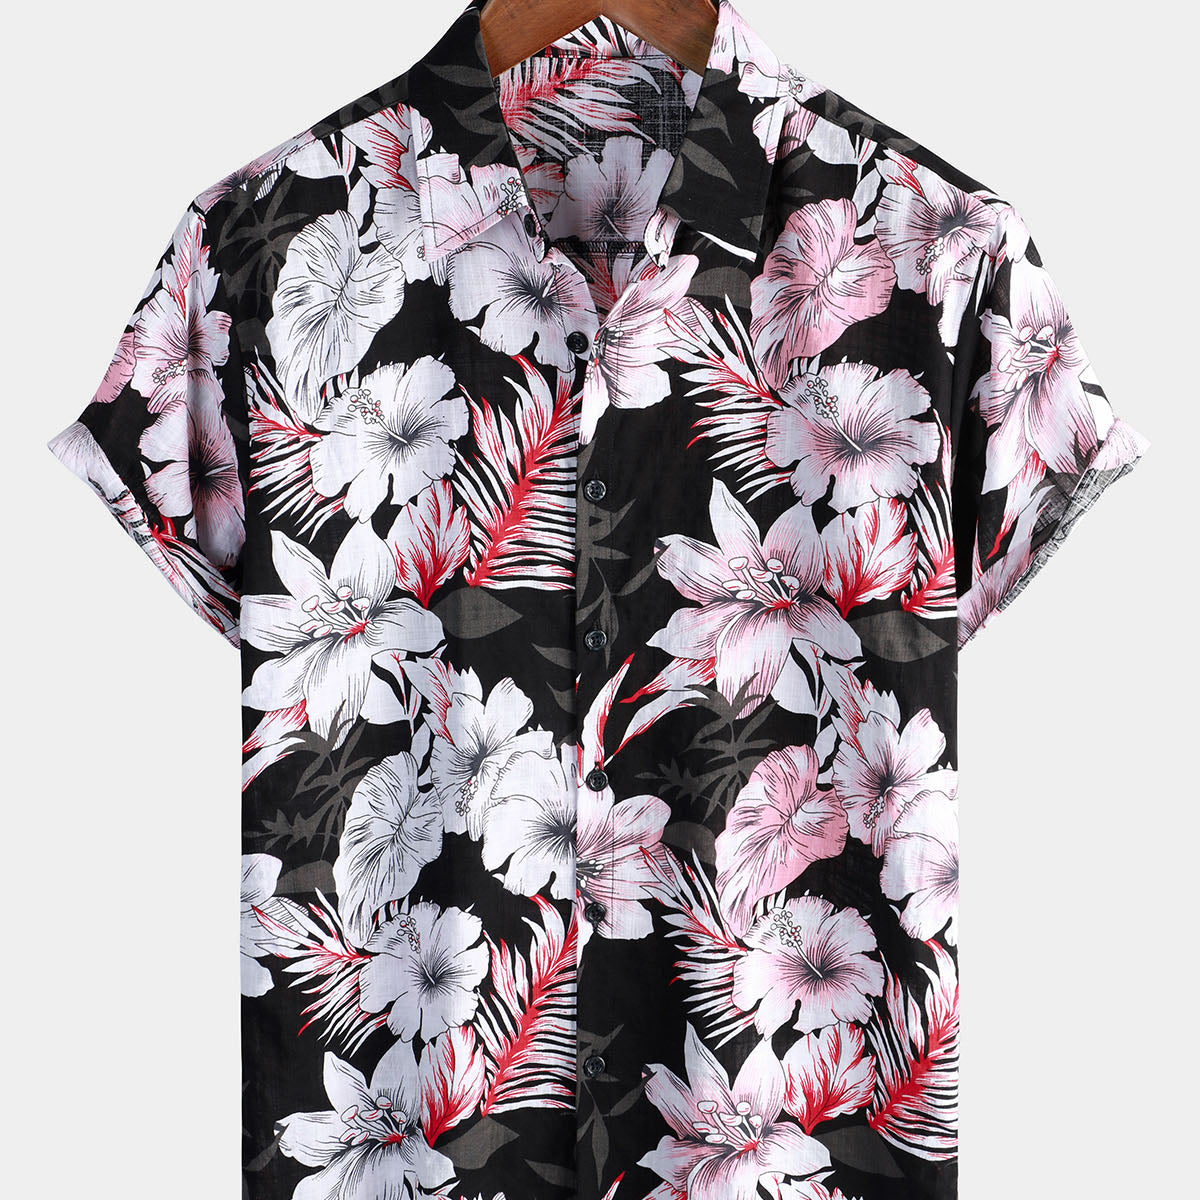 Camisa hawaiana de manga corta para hombre, color rosa tropical, floral, con botones, hibisco, vacaciones de verano, playa